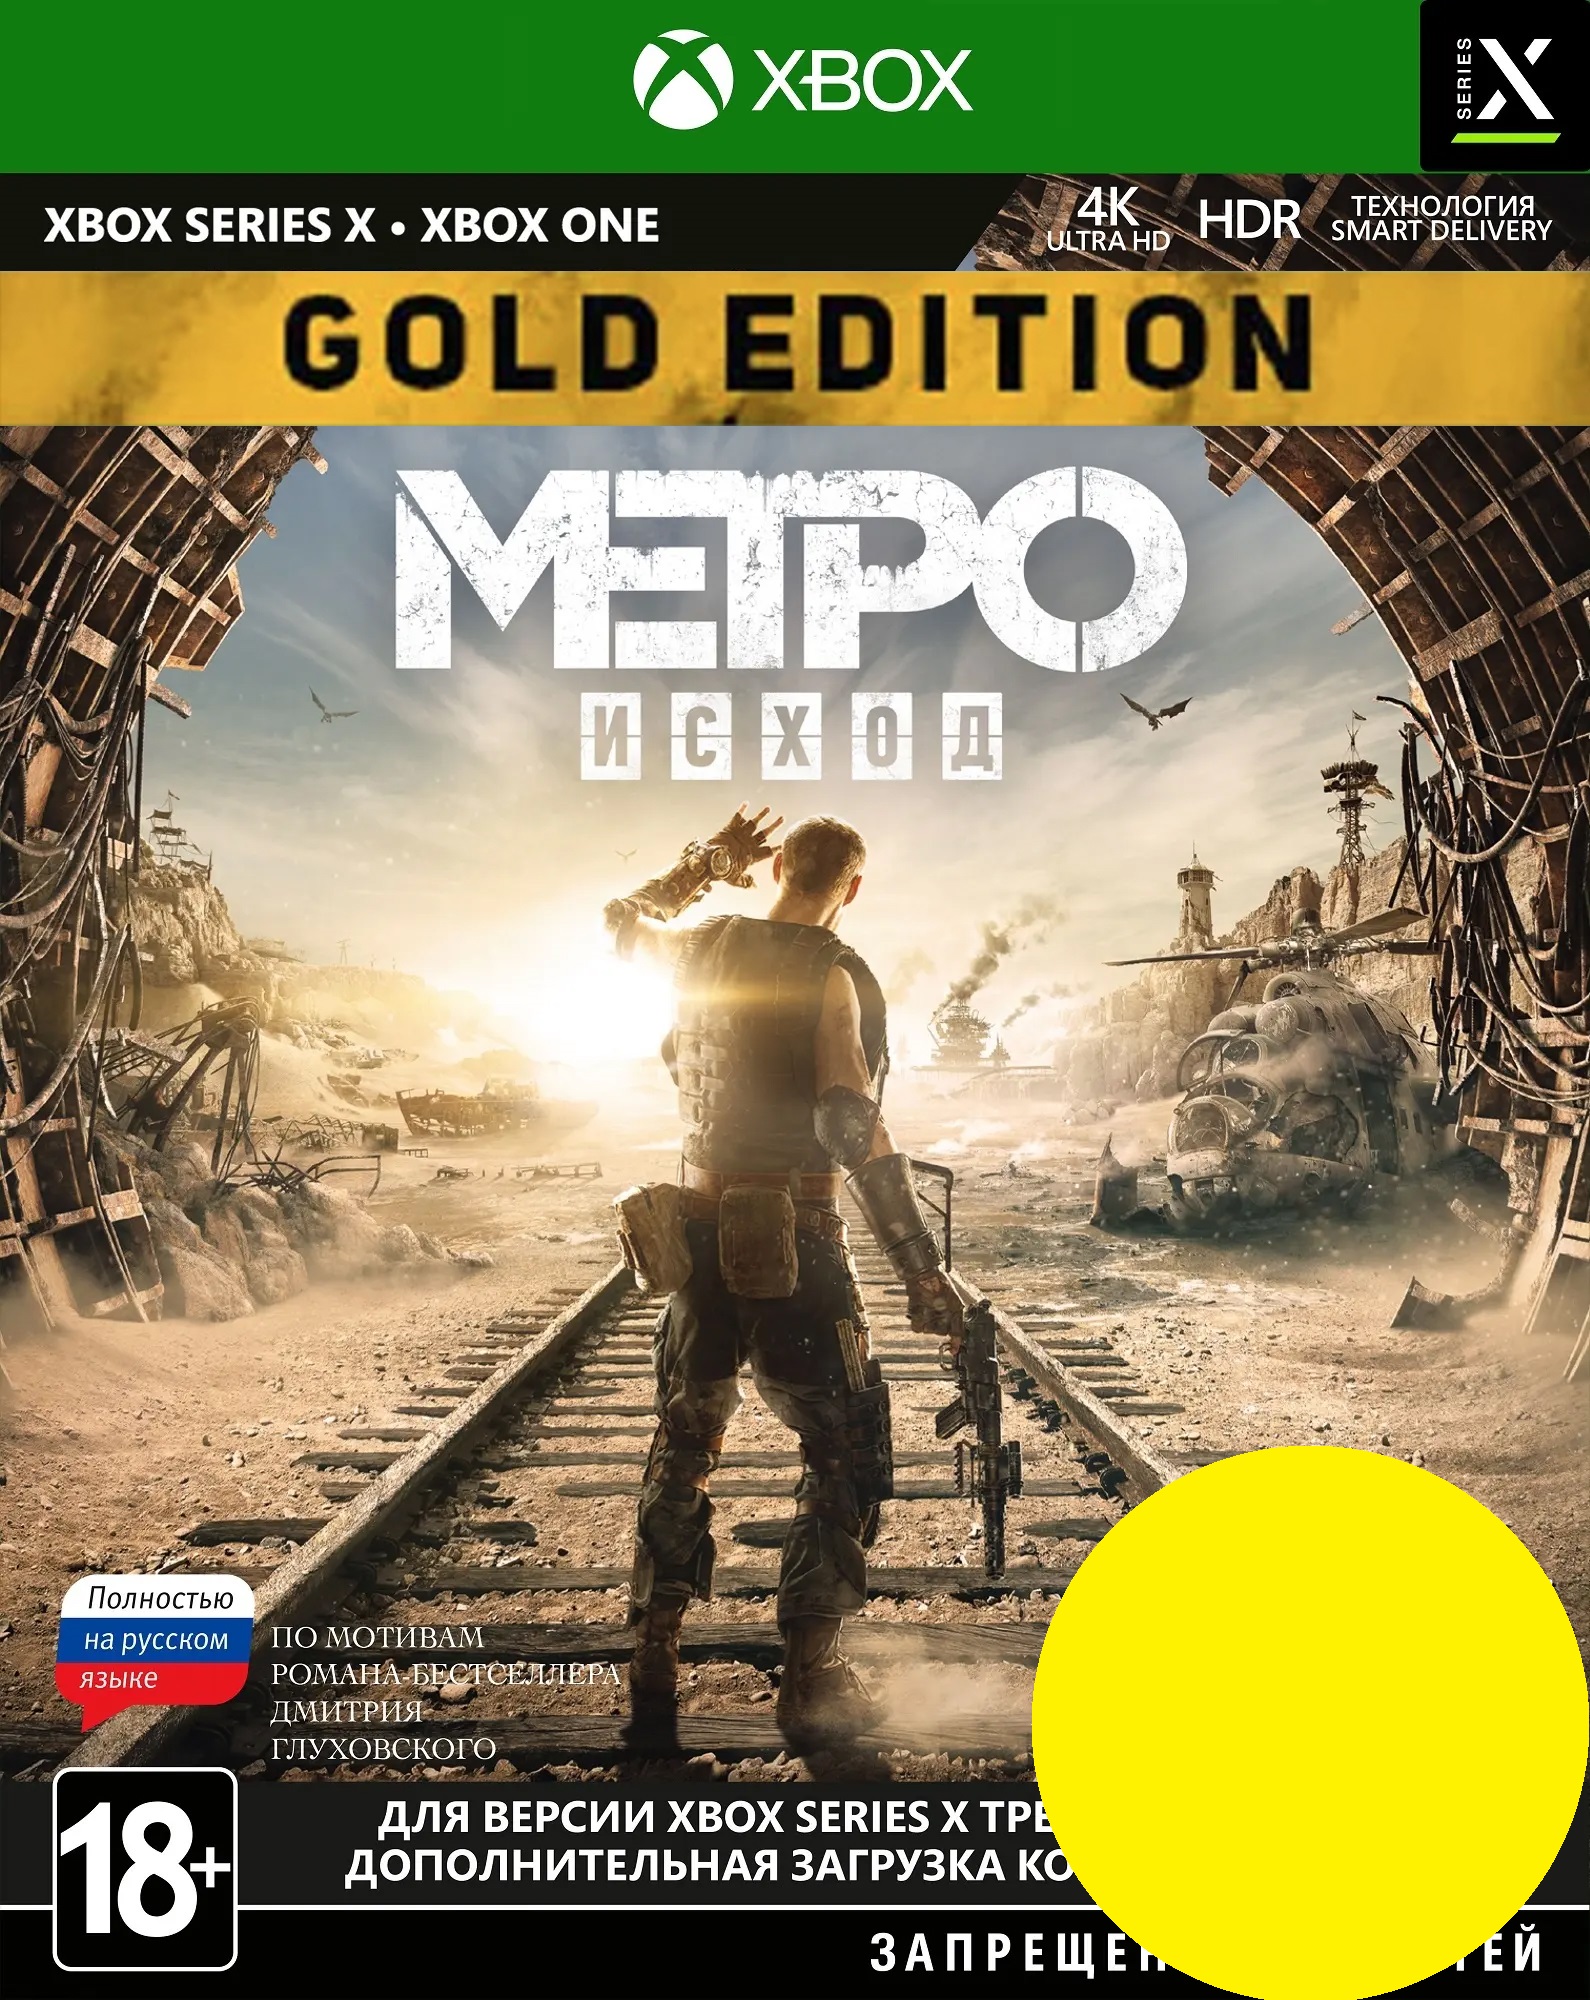 Метро эксодус голд. Метро Эксодус Голд эдишн. Metro Exodus Gold Edition обложка. Метро исход Голд эдишн ПС 4. Метро Эксодус на хбокс Ван.